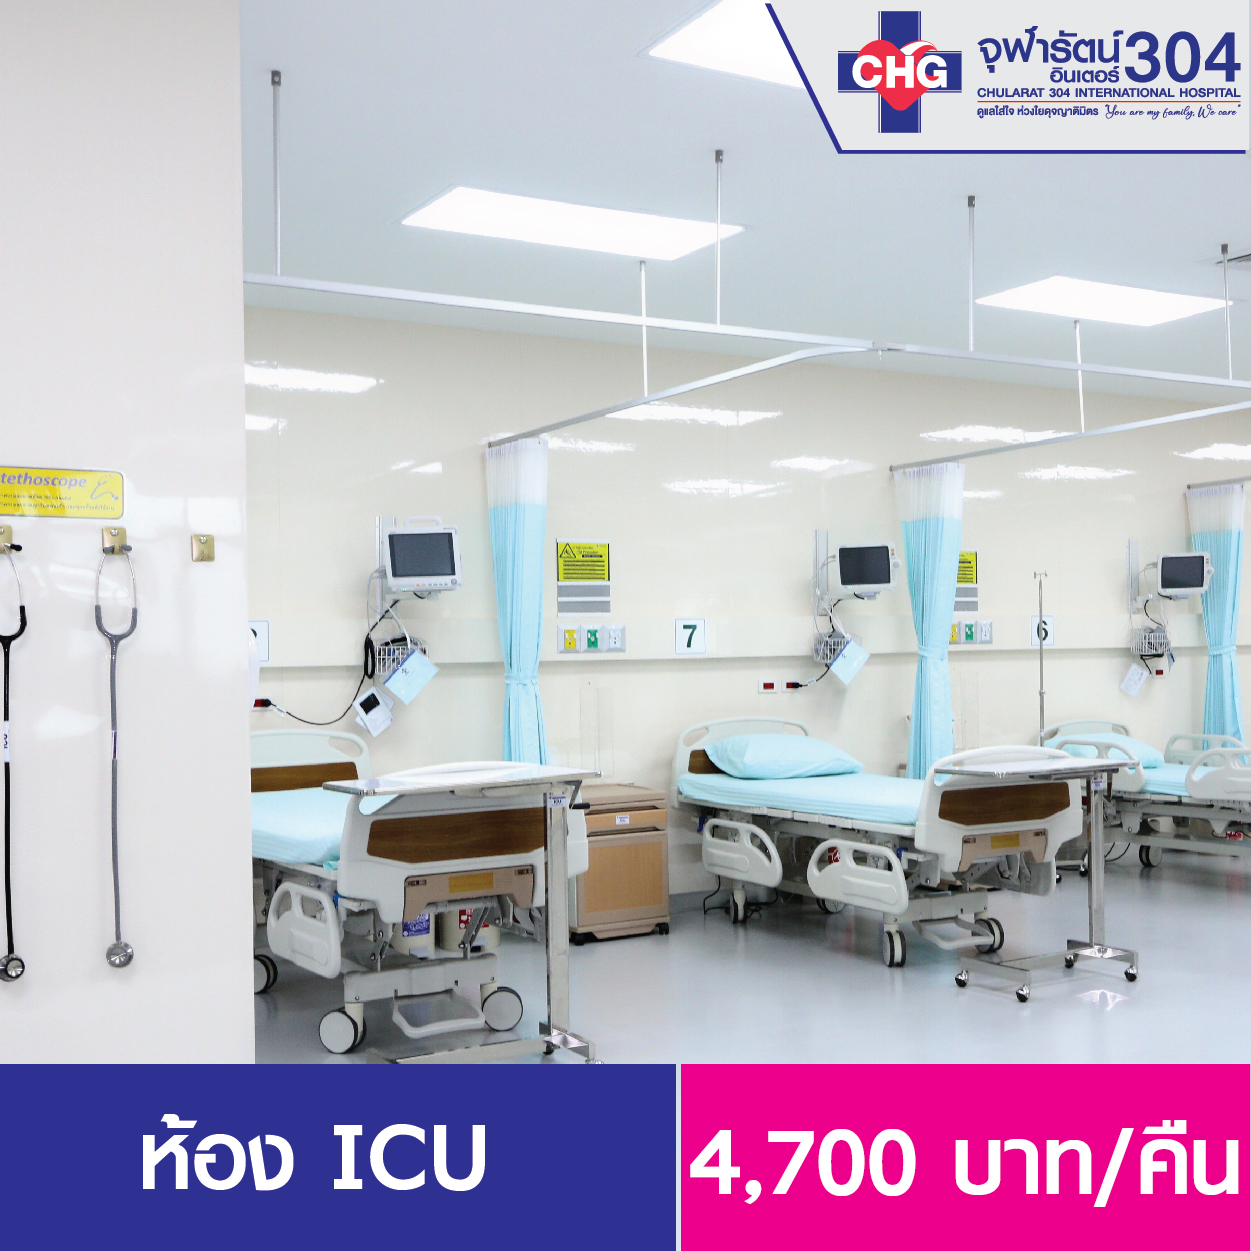 ห้องพักผู้ป่วยวิกฤติ ICU - ห้องพักผู้ป่วยใน - โรงพยาบาลจุฬารัตน์ 304 อินเตอร์